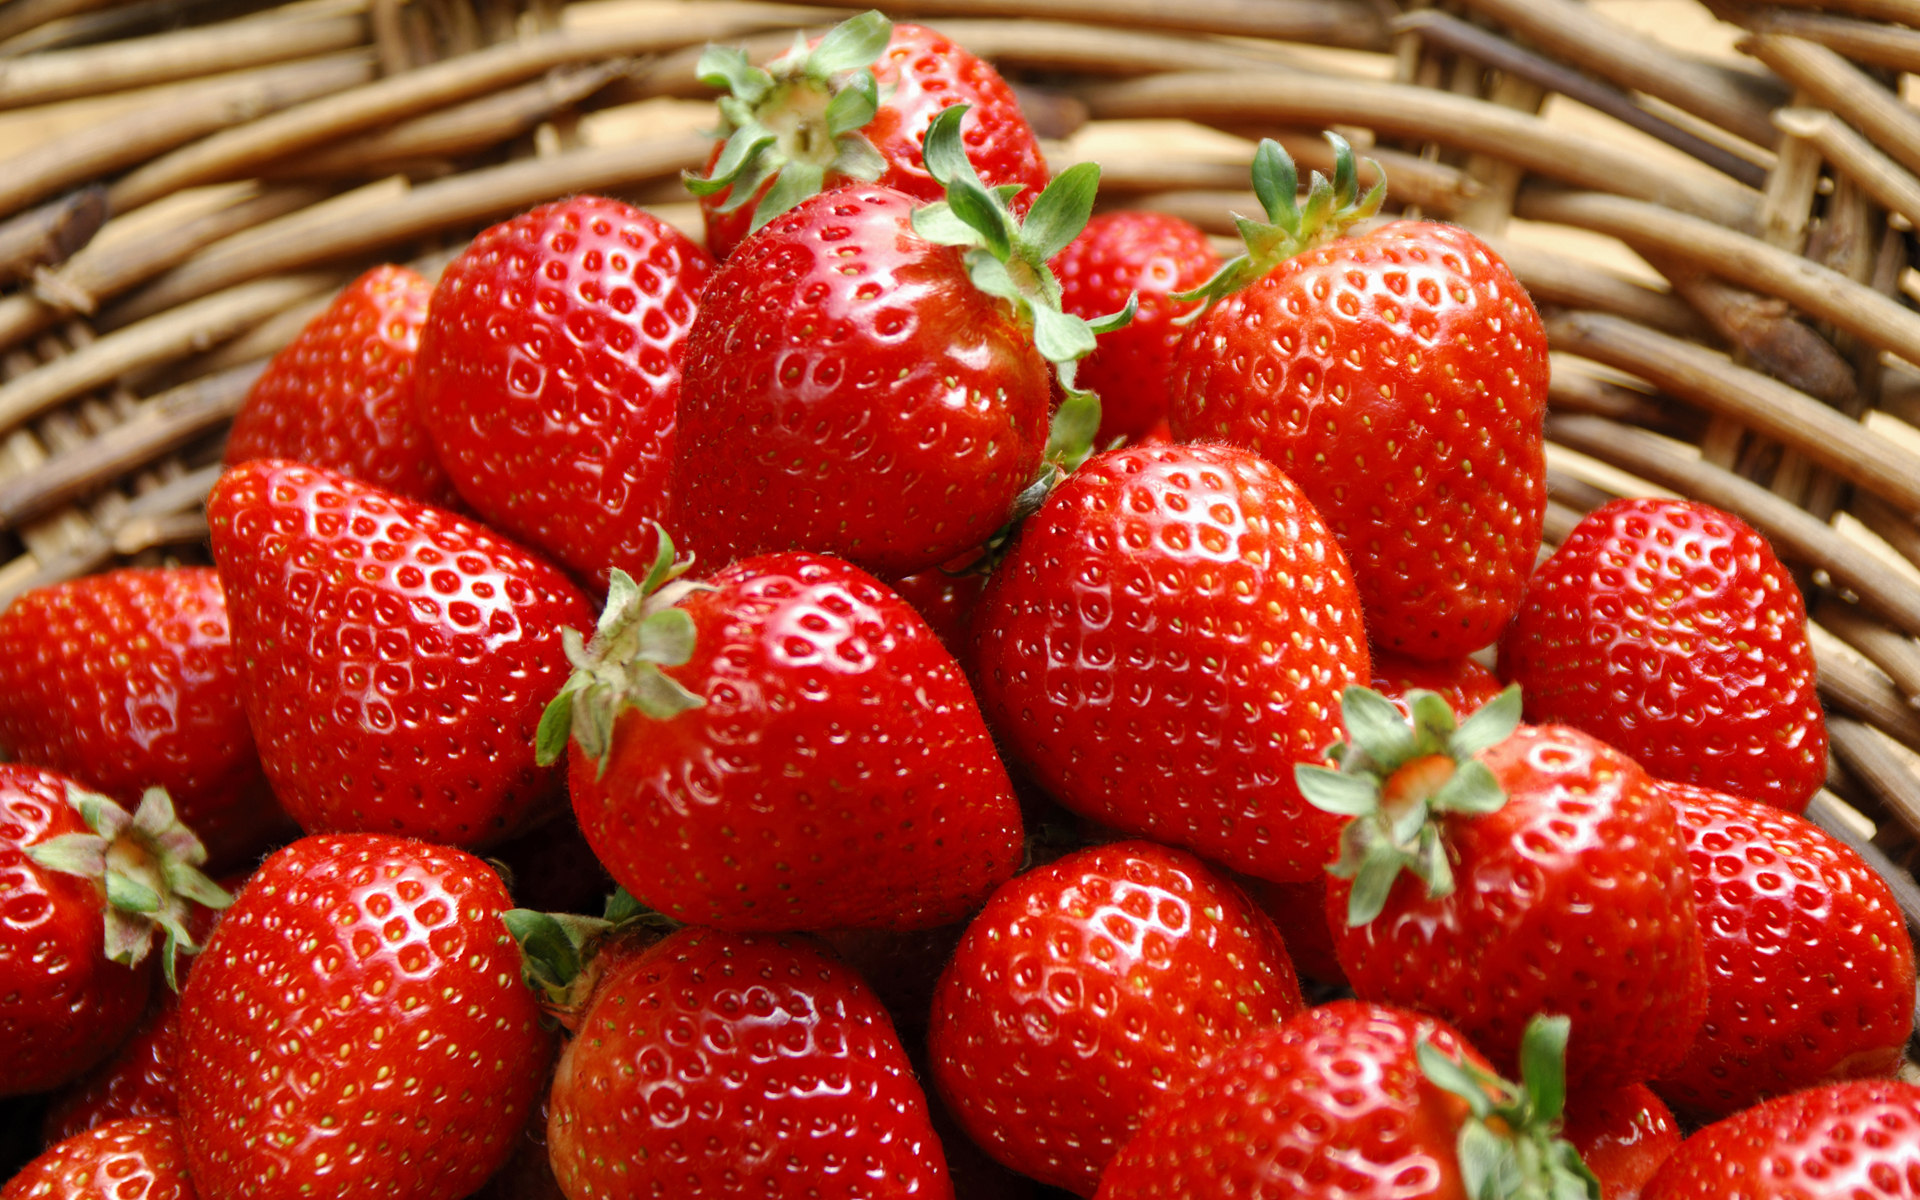 又到吃草莓的季节啦!